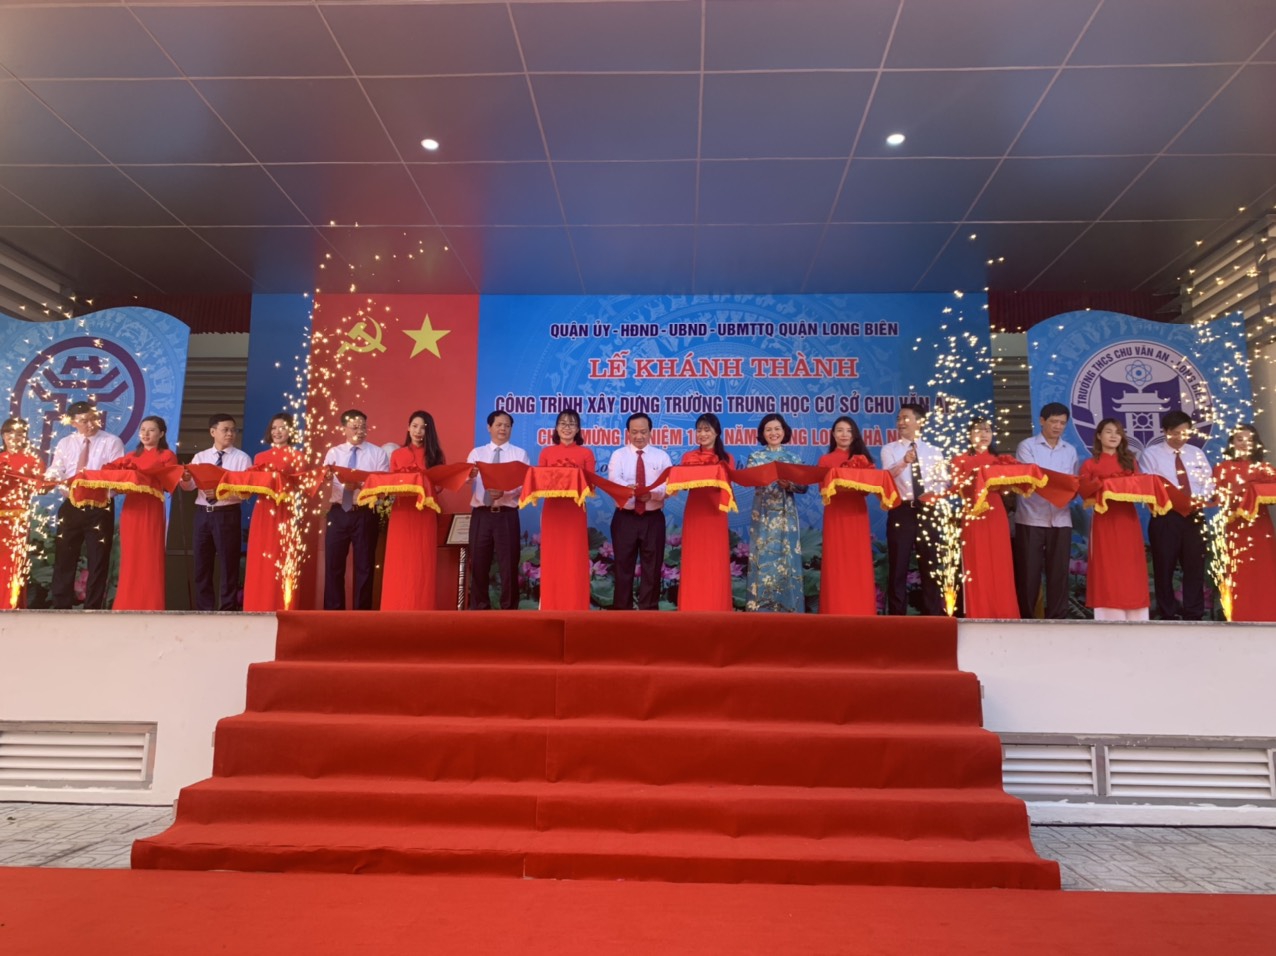 Hà Nội: Khánh thành trường THCS Chu Văn An chào mừng kỷ niệm 1010 năm Thăng Long - Hà Nội - Ảnh minh hoạ 2